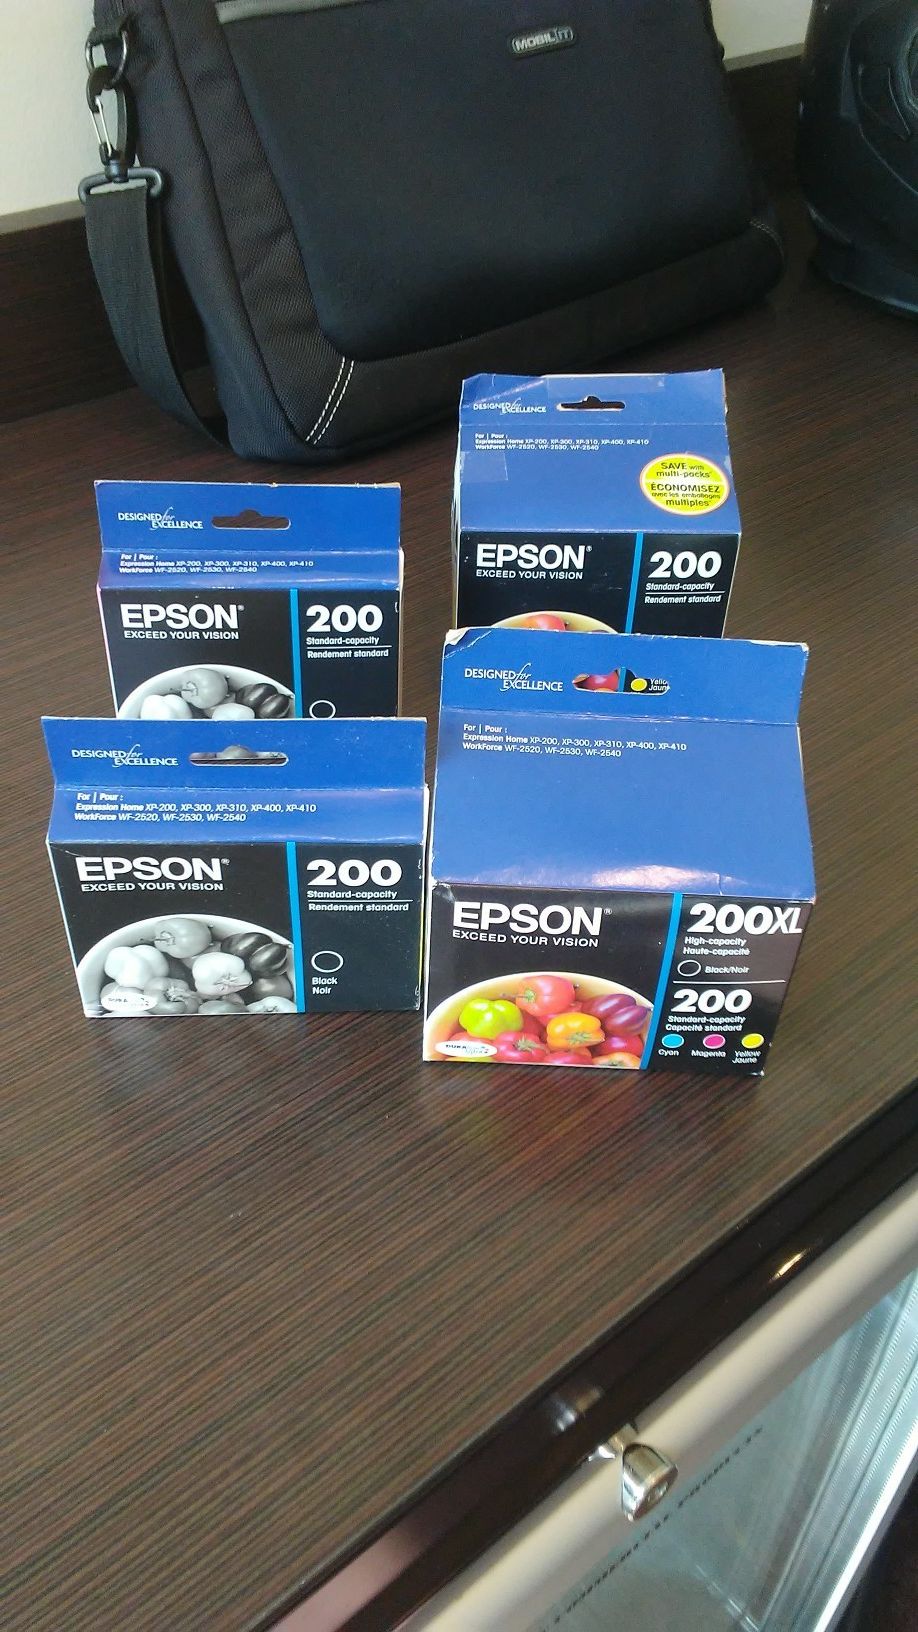 Epson 200 printer ink. 4 various boxes